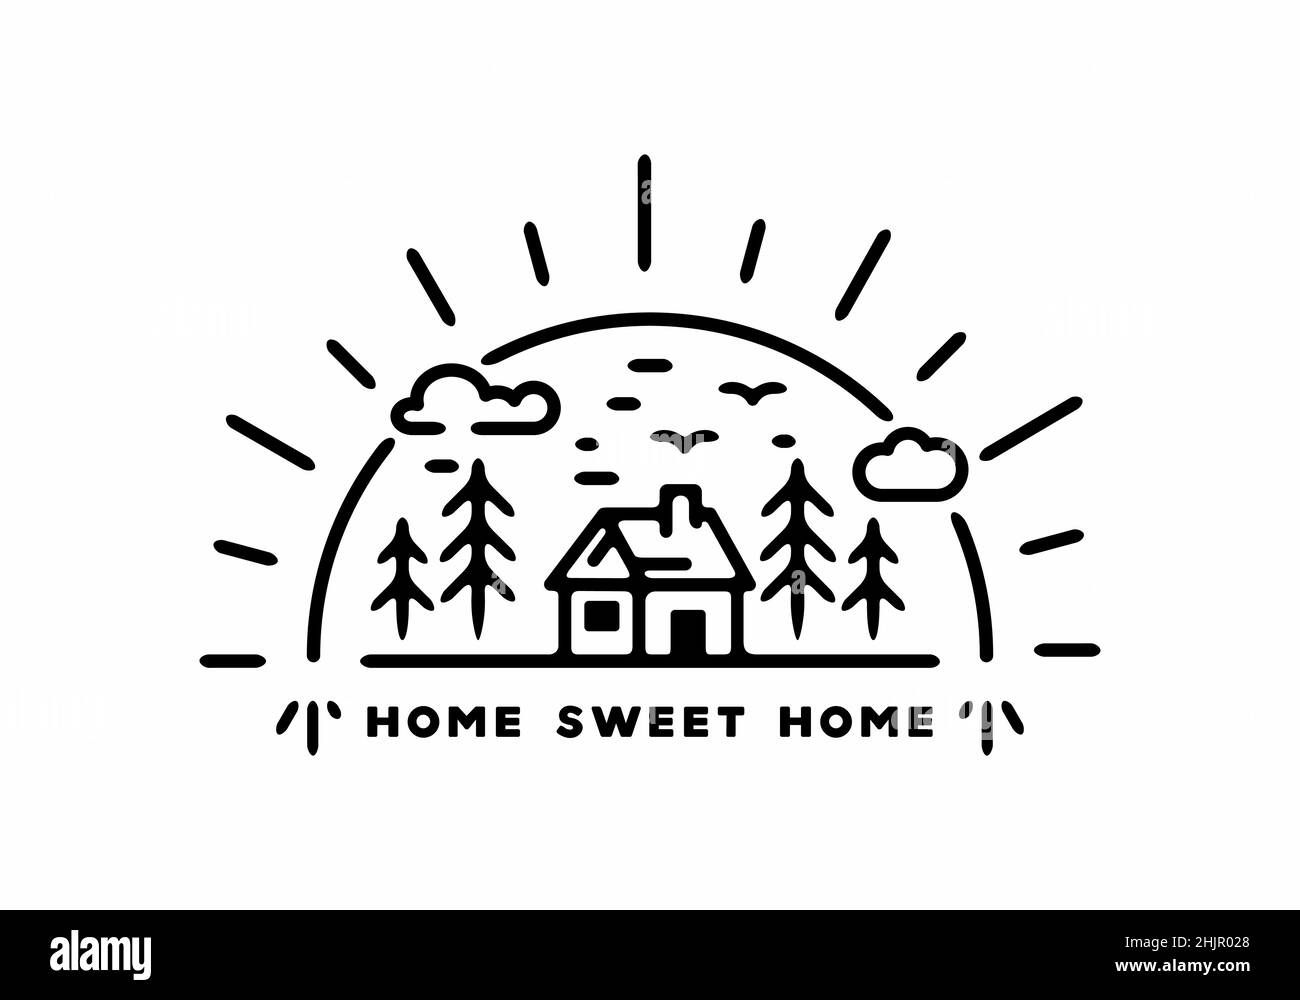 Home sweet home line art illustration design Stock Vector